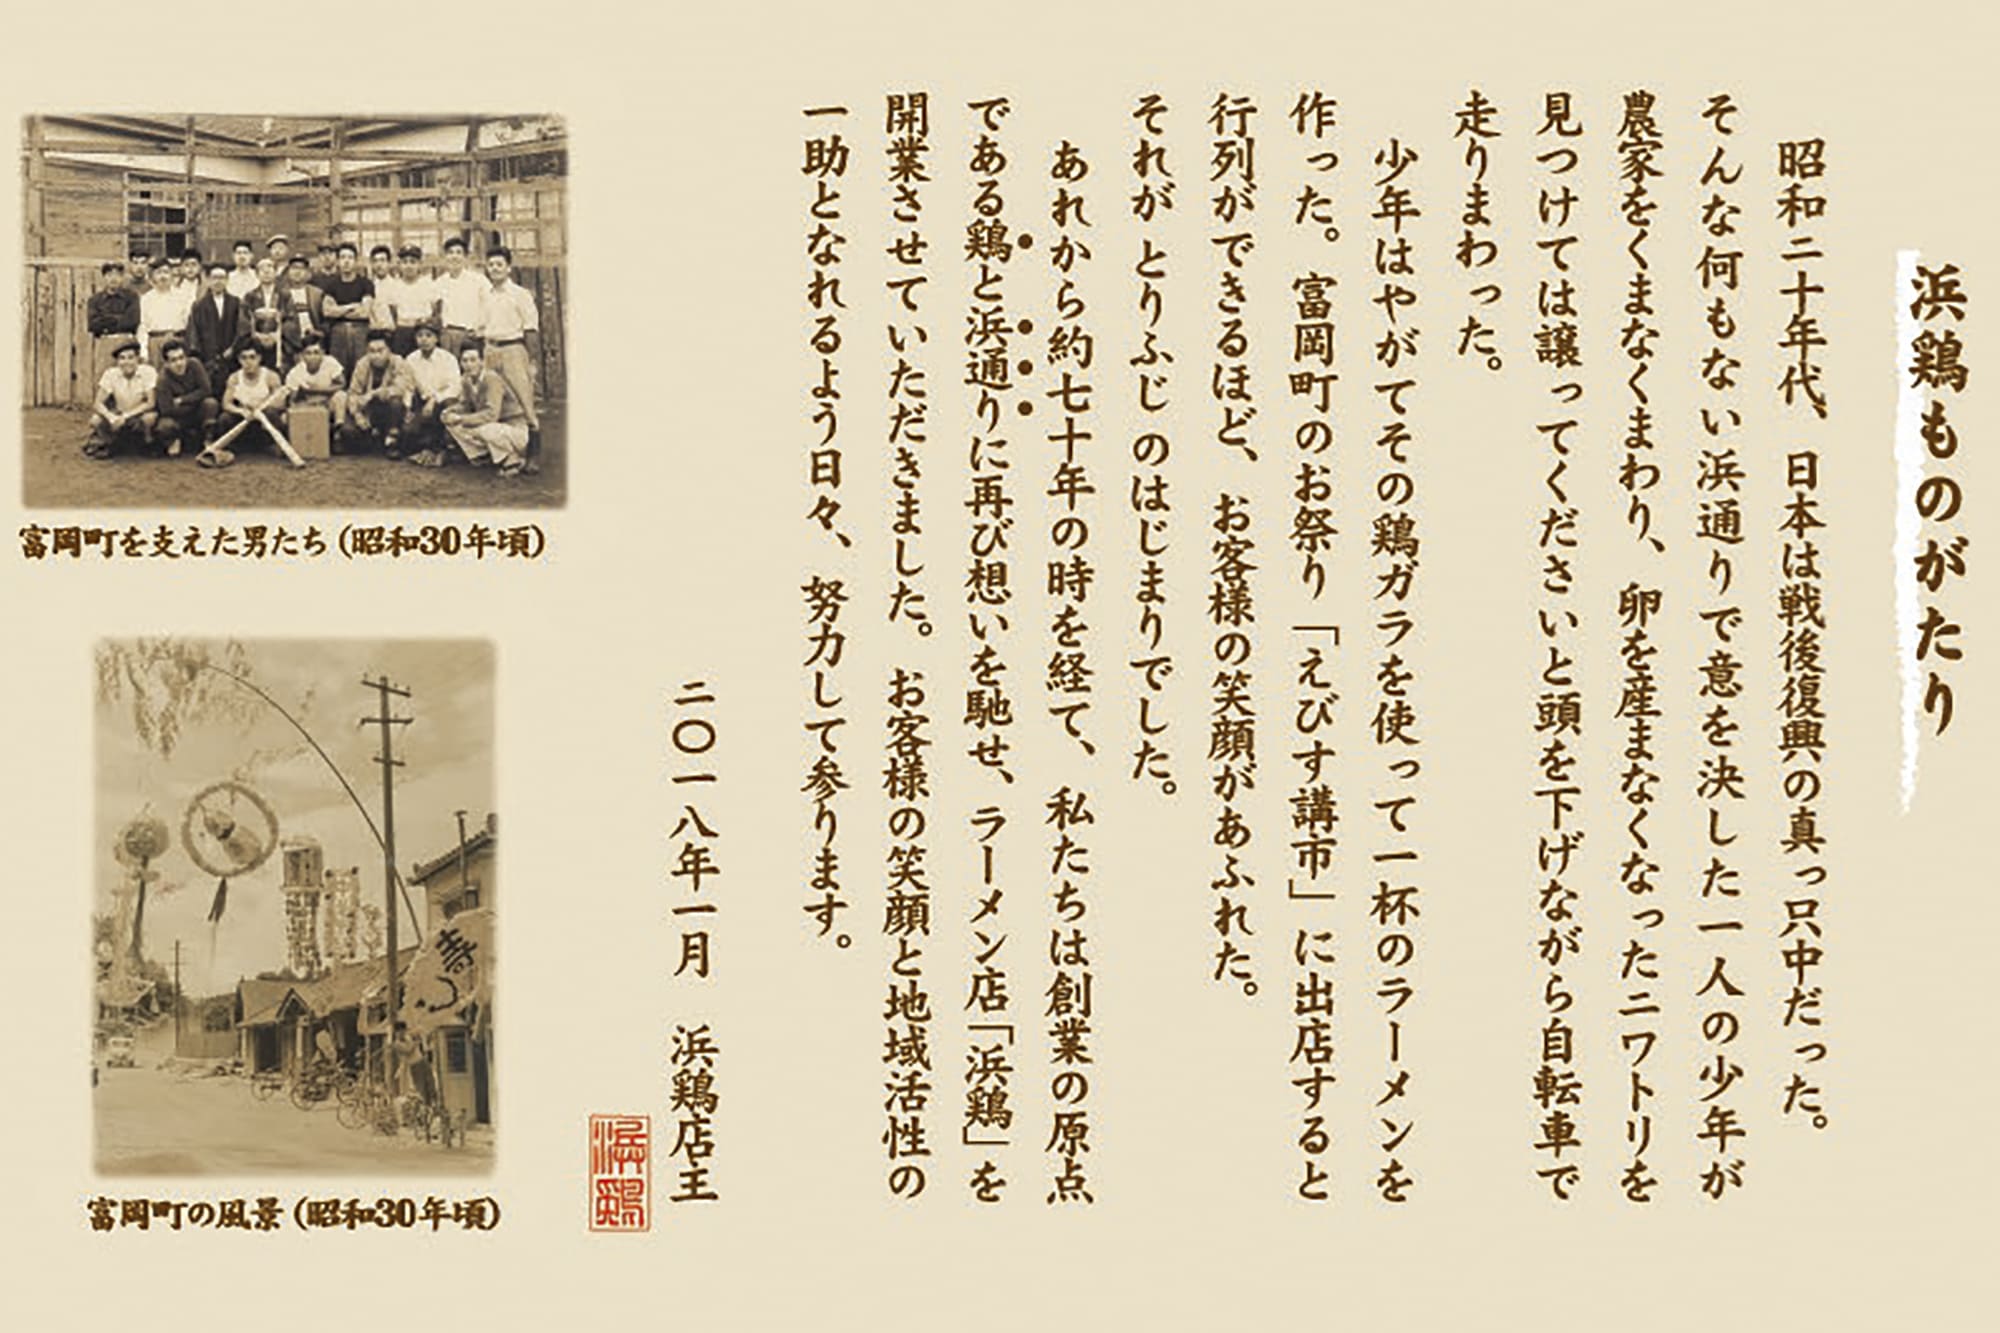 鳥藤本店の社史の一部。藤田氏の父親・勝夫氏が前身となる「食堂鳥藤」を創業した際、看板メニューは鶏ガラをベースとしたラーメンだった